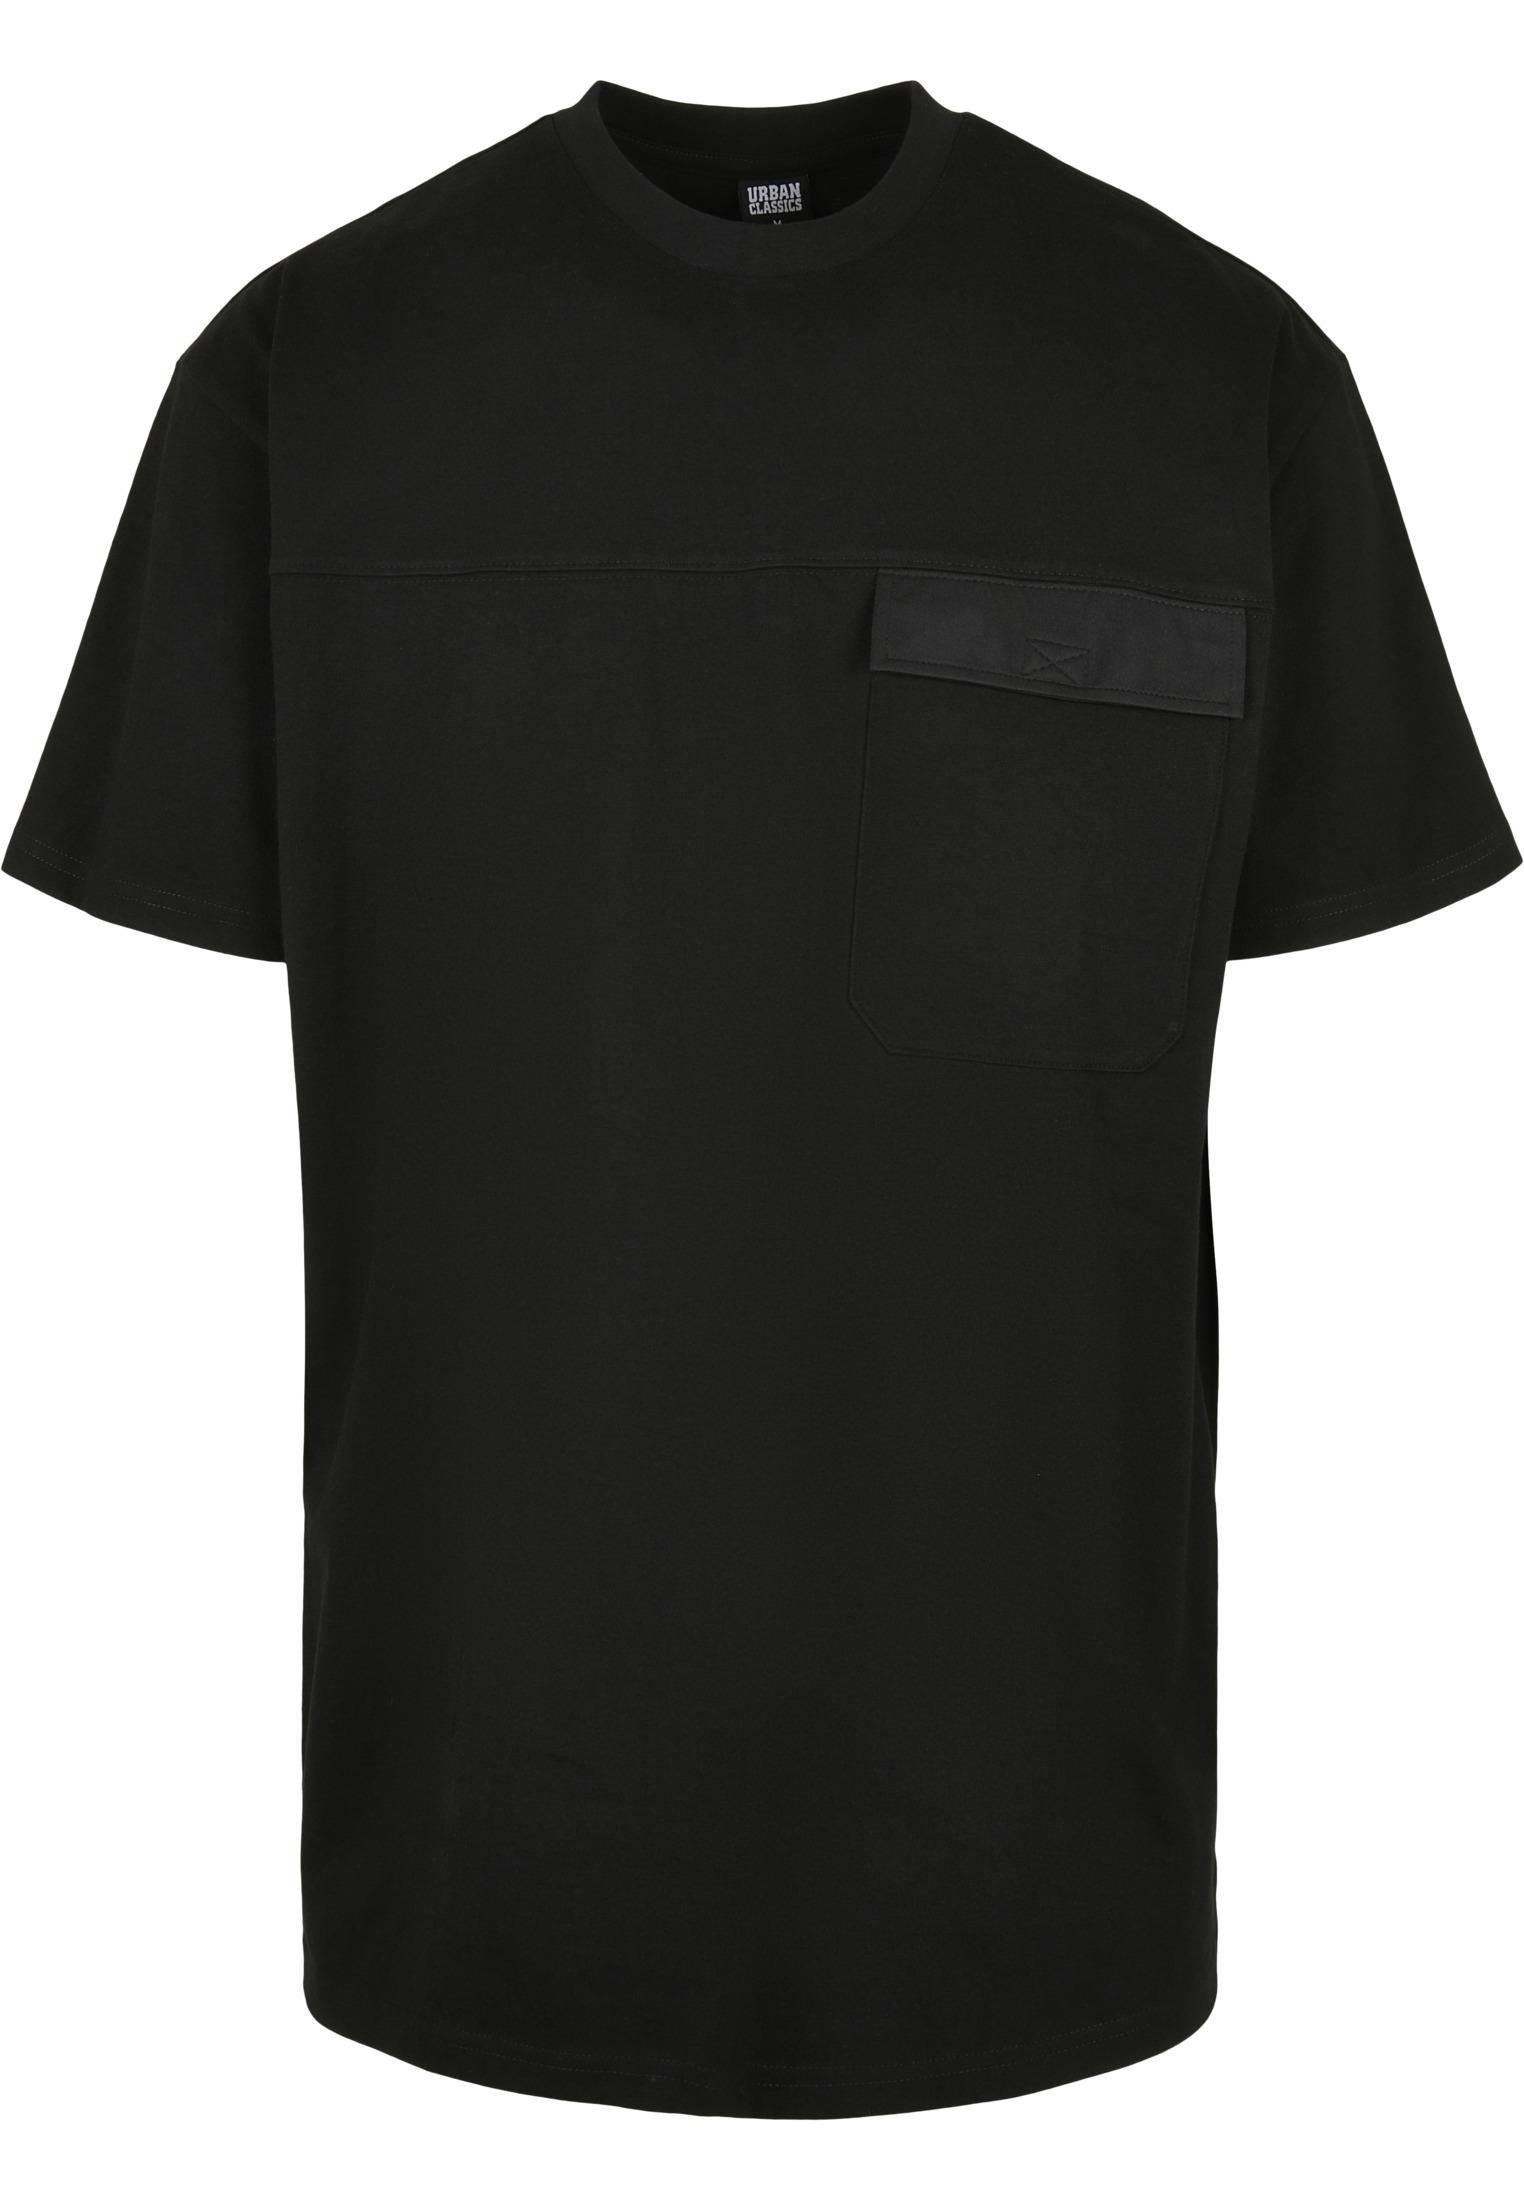 Black Big Print-Shirt Oversized Flap TB4128 URBAN Pocket CLASSICS Tee